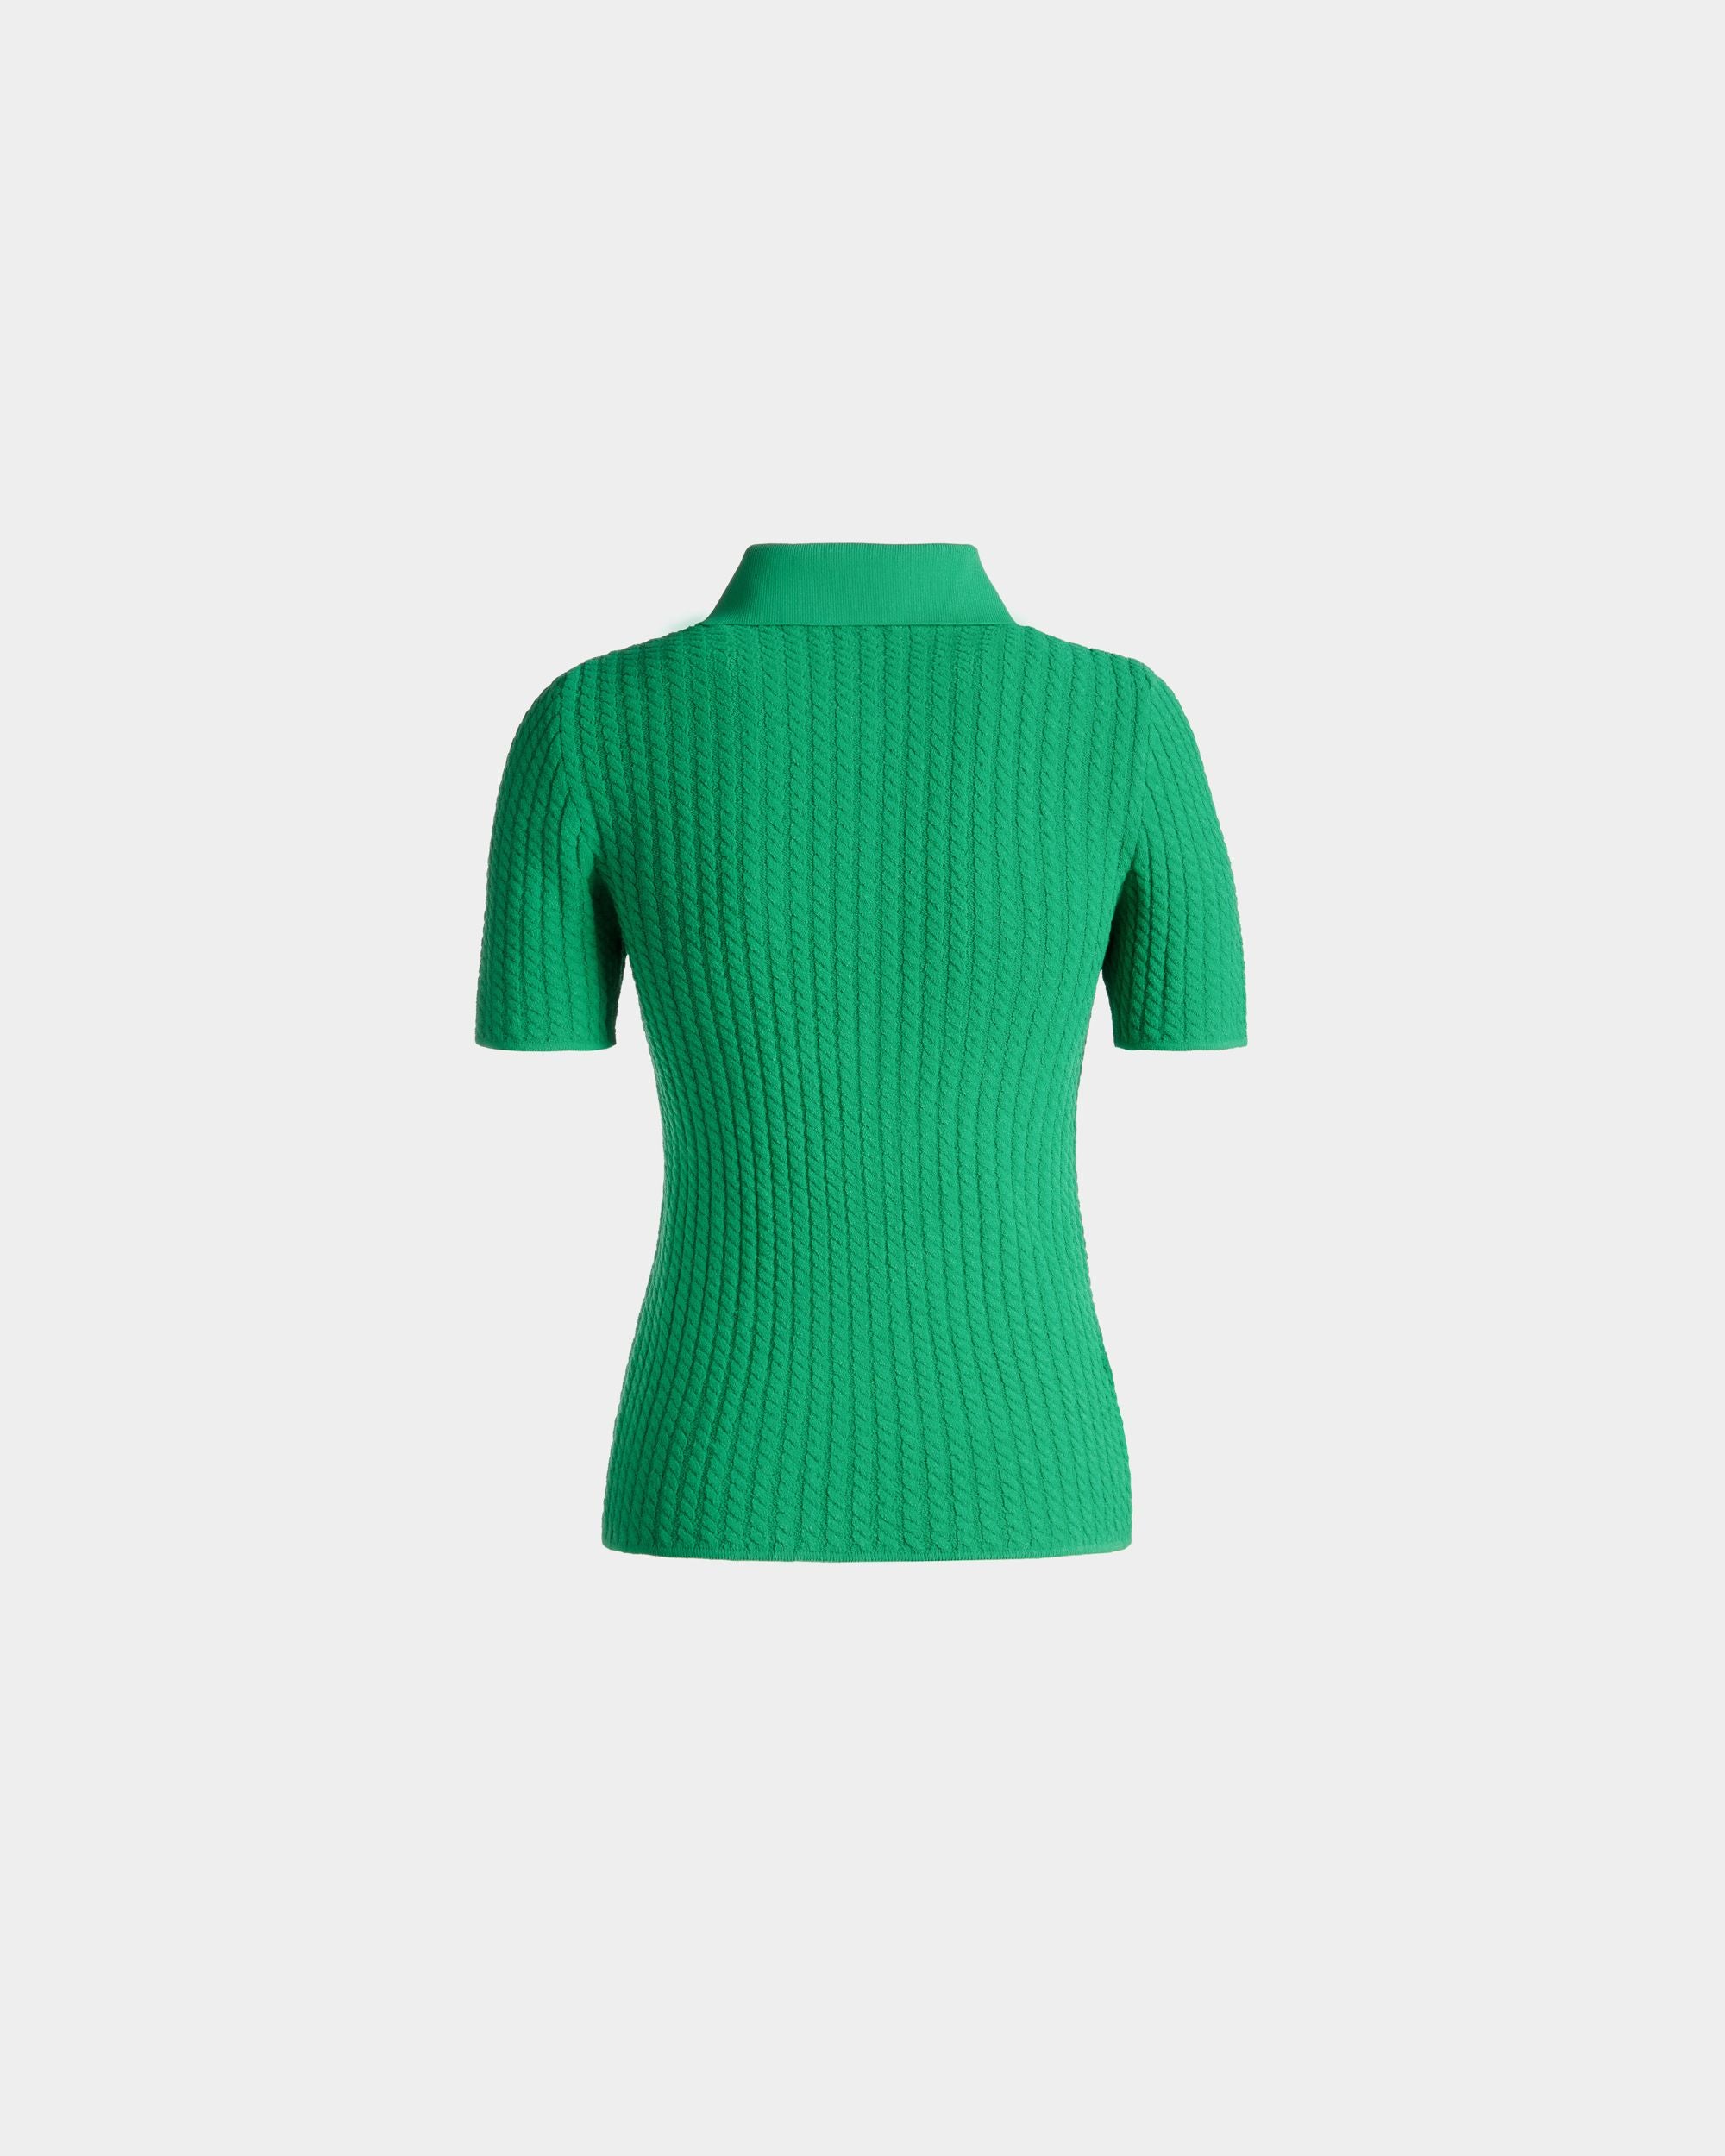 Poloshirt mit halbem Reißverschluss für Damen aus Strickgewebe in Grün | Bally | Still Life Rückseite